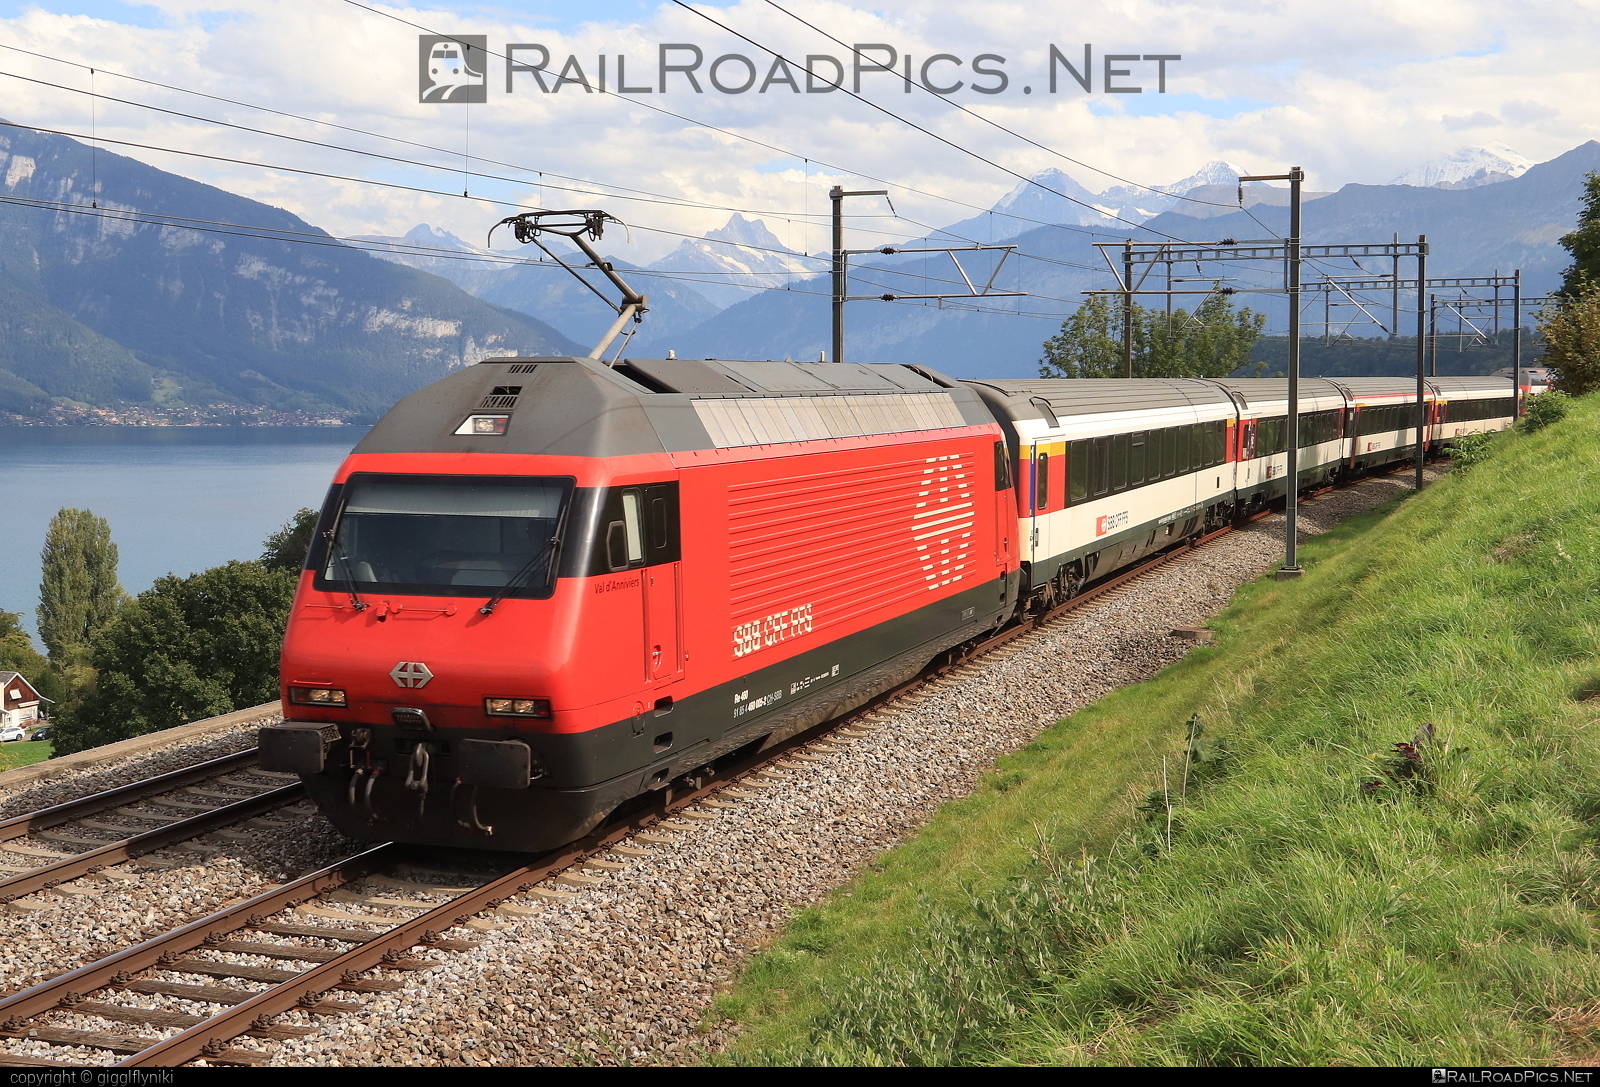 SBB Class Re 460 - 460 005 operated by Schweizerische Bundesbahnen SBB #CFF #CheminsDeFerFederauxSuisses #FFS #FerrovieFederaliSvizzere #SBB #SchweizerischeBundesbahnen #lok2000 #sbbClassRe460 #sbbRe460